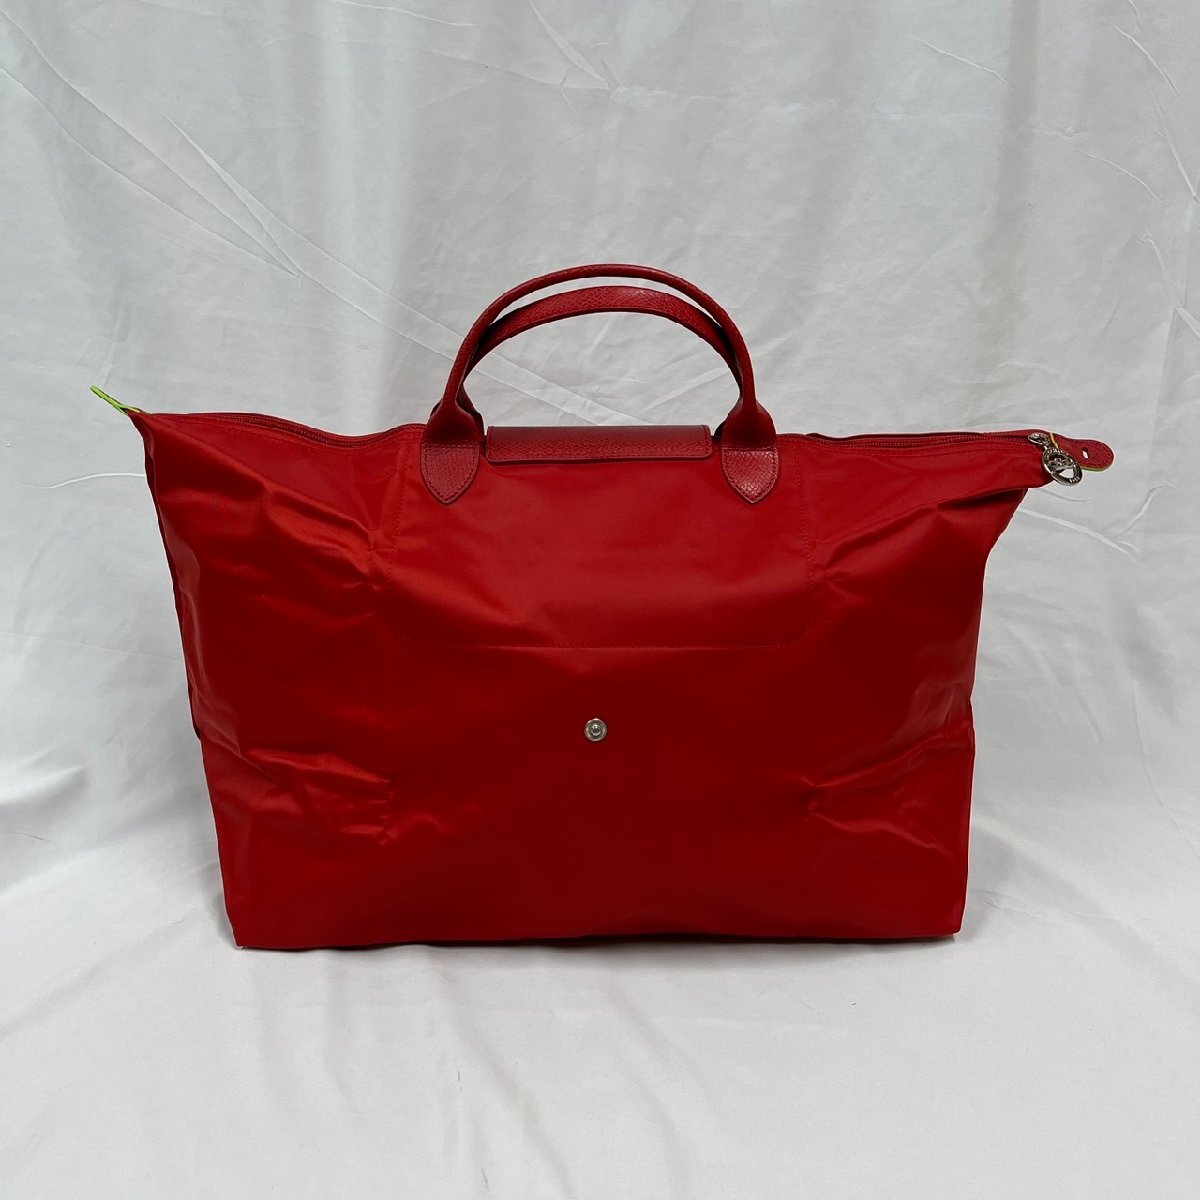 vV[ превосходный товар ] Long Champ Longchamprup задний -juM путешествие сумка помидор красный серия цвет путешествие для / большая сумка женский L1624919P83Vv